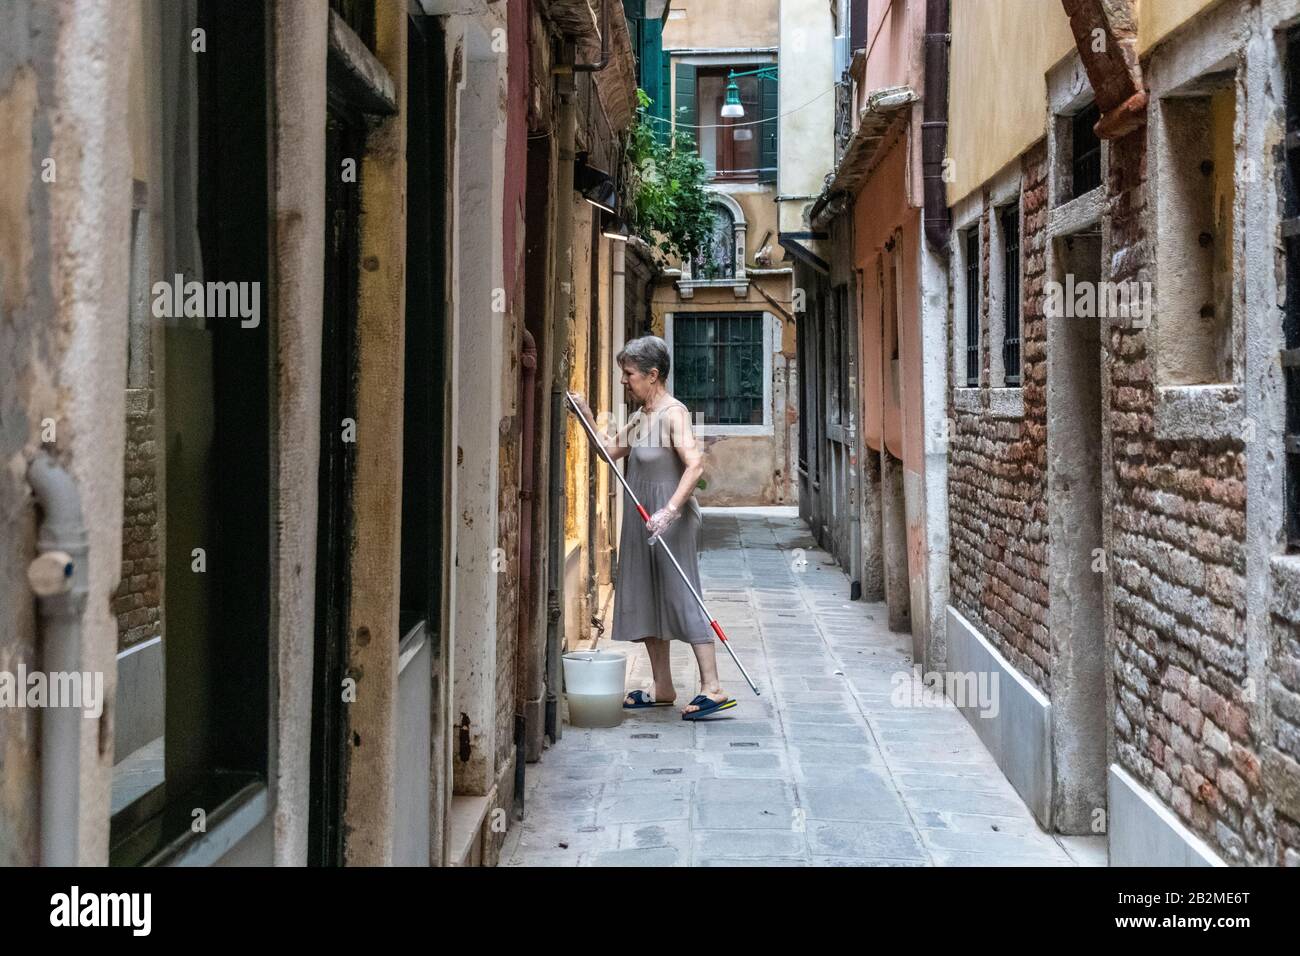 Une habitante locale nettoie ses fenêtres dans une allée étroite à Venise, en Italie Banque D'Images